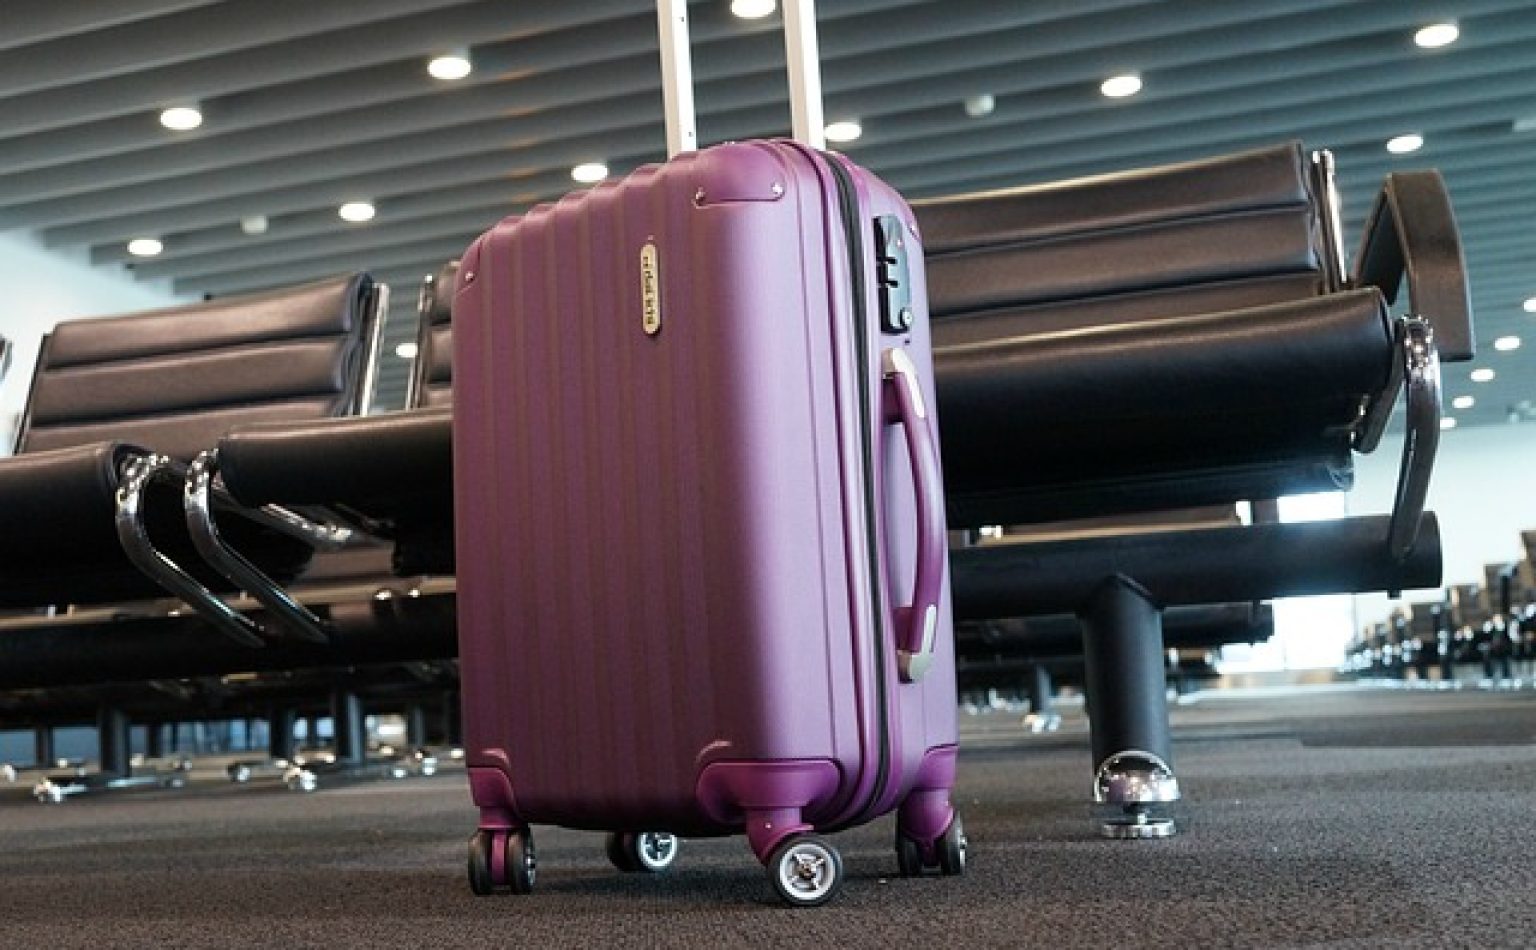 luggage 2869269 640 spencer wing da pixabay